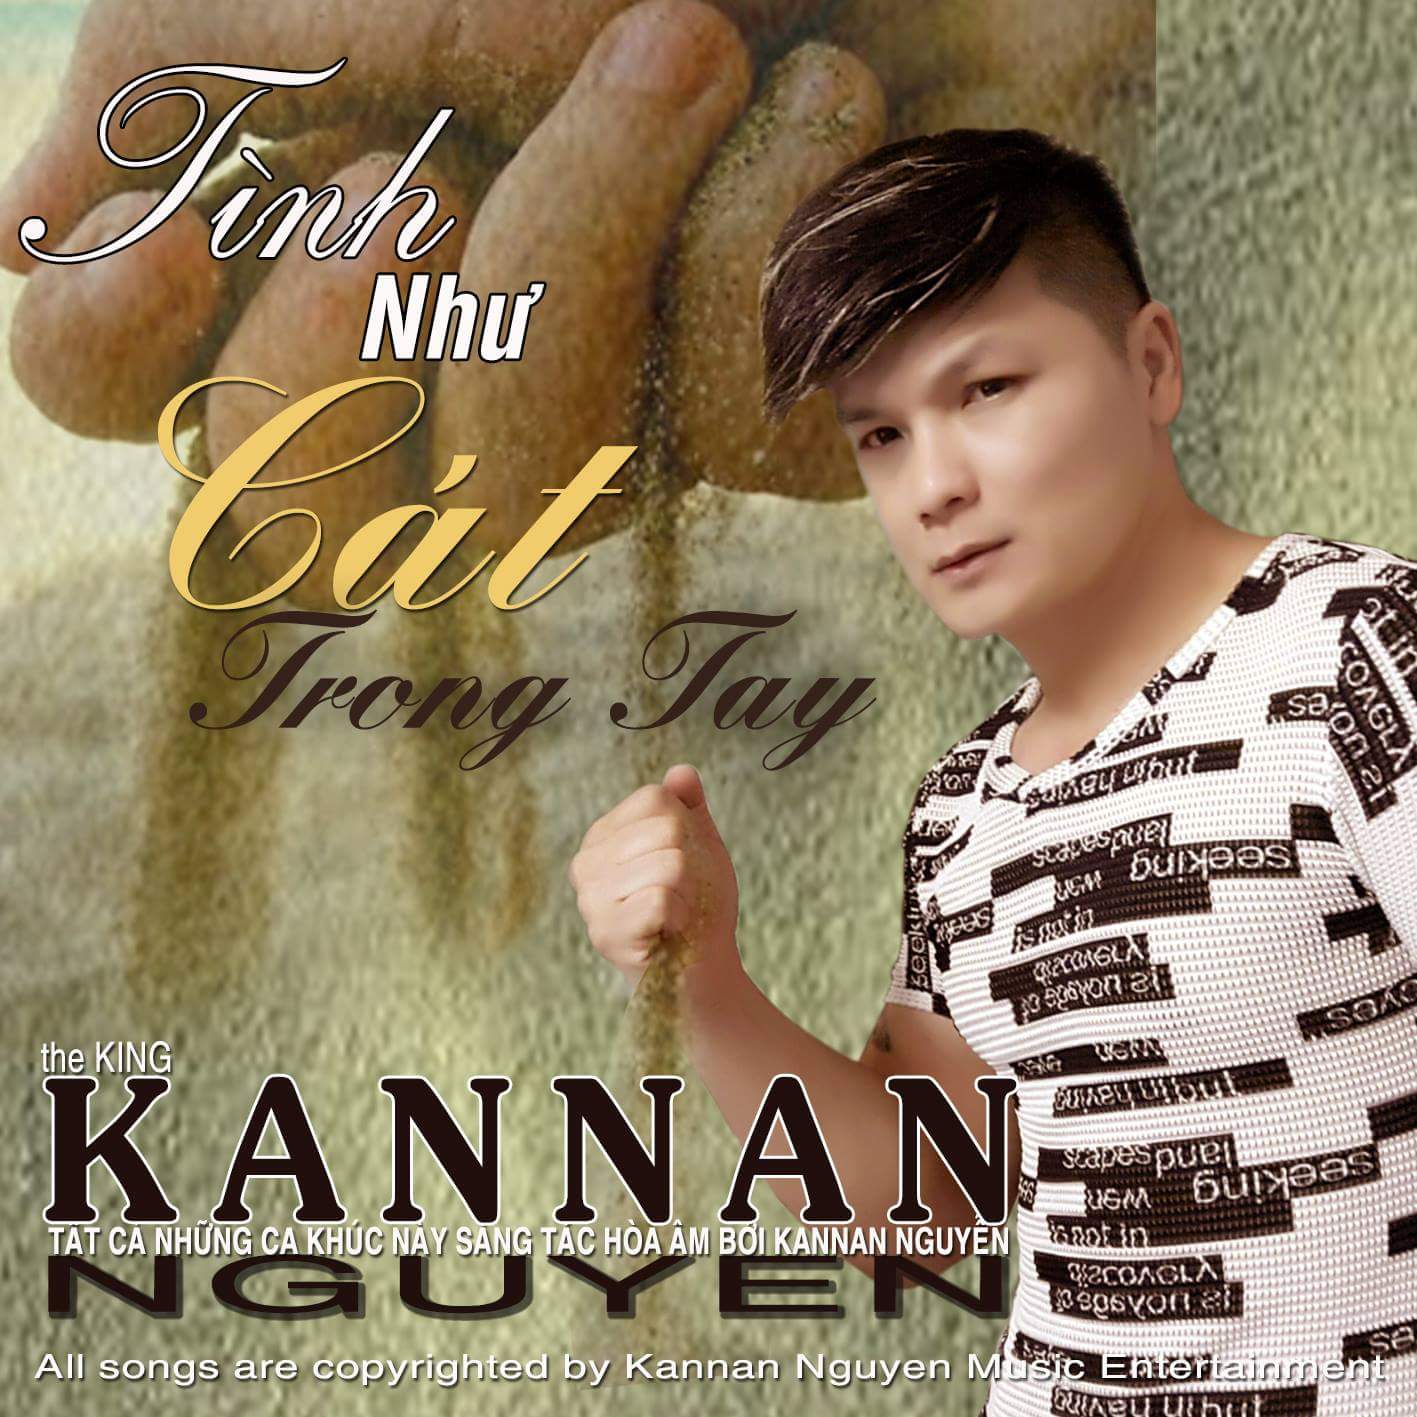 Kannan Nguyễn đạt hơn 1 triệu view  album "Tình như cát trong tay"